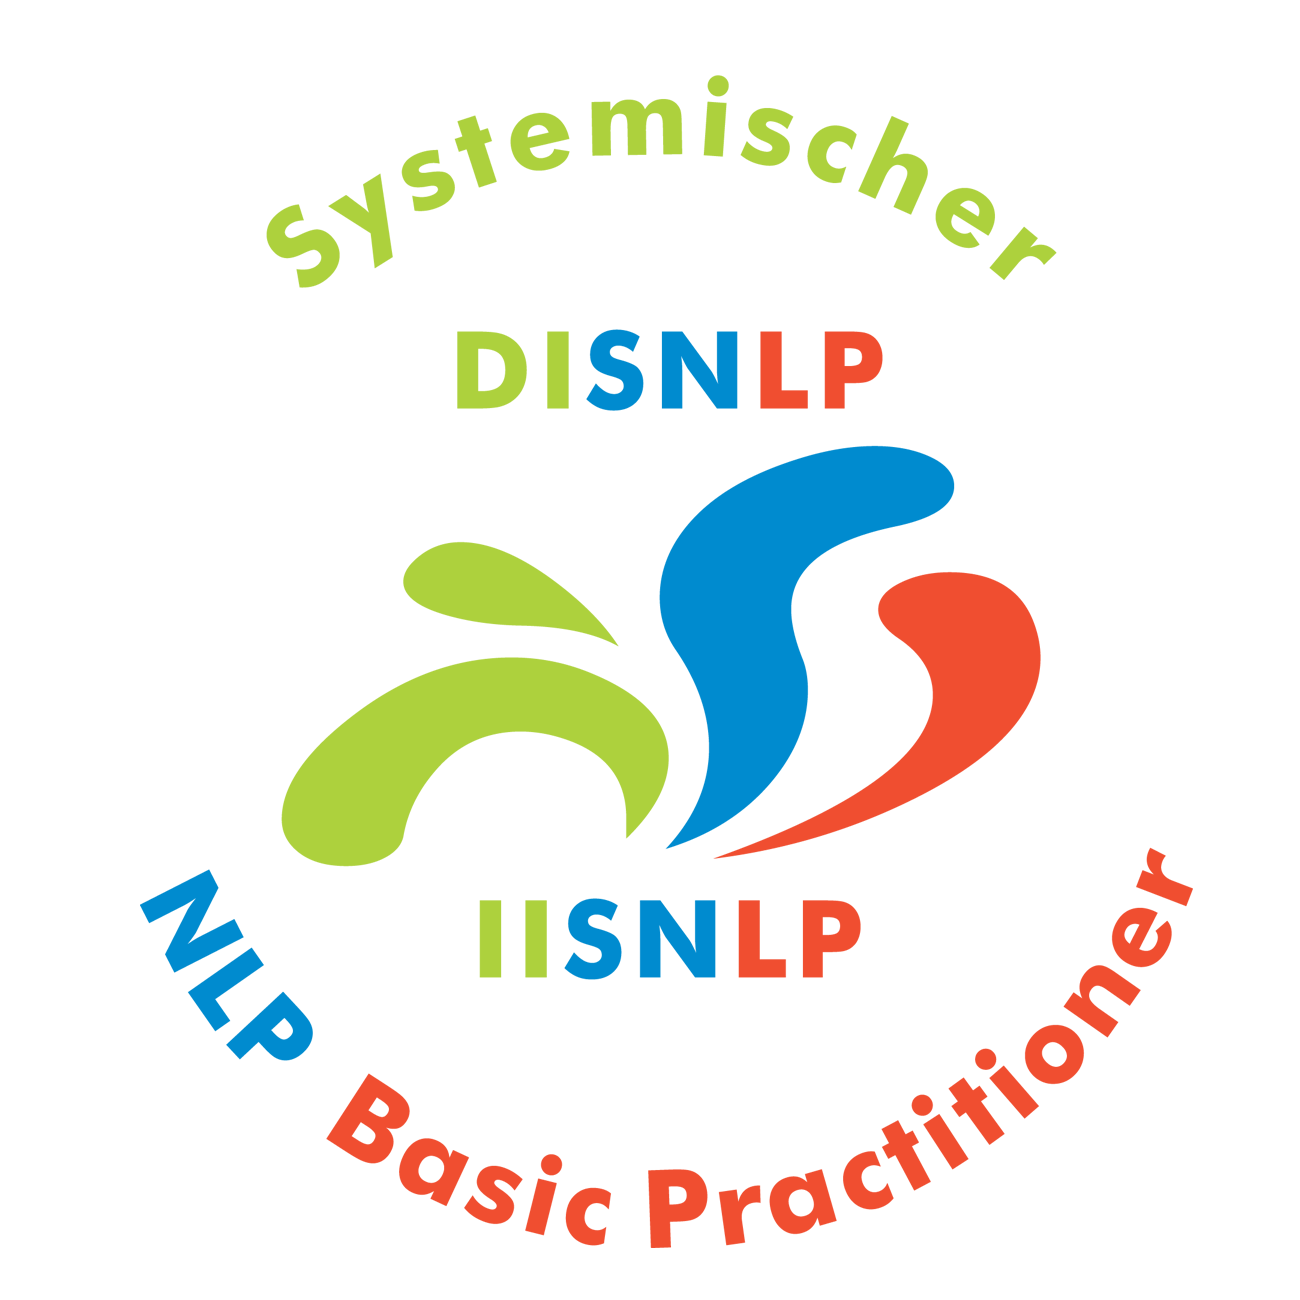 Seminar Selbstbewusstsein, Selbstvertrauen, Selbstwert, Selbstsicherheit stärken Wiesbaden Rhein mit NLP Coaching Kurs für mehr Selbstbewusstsein